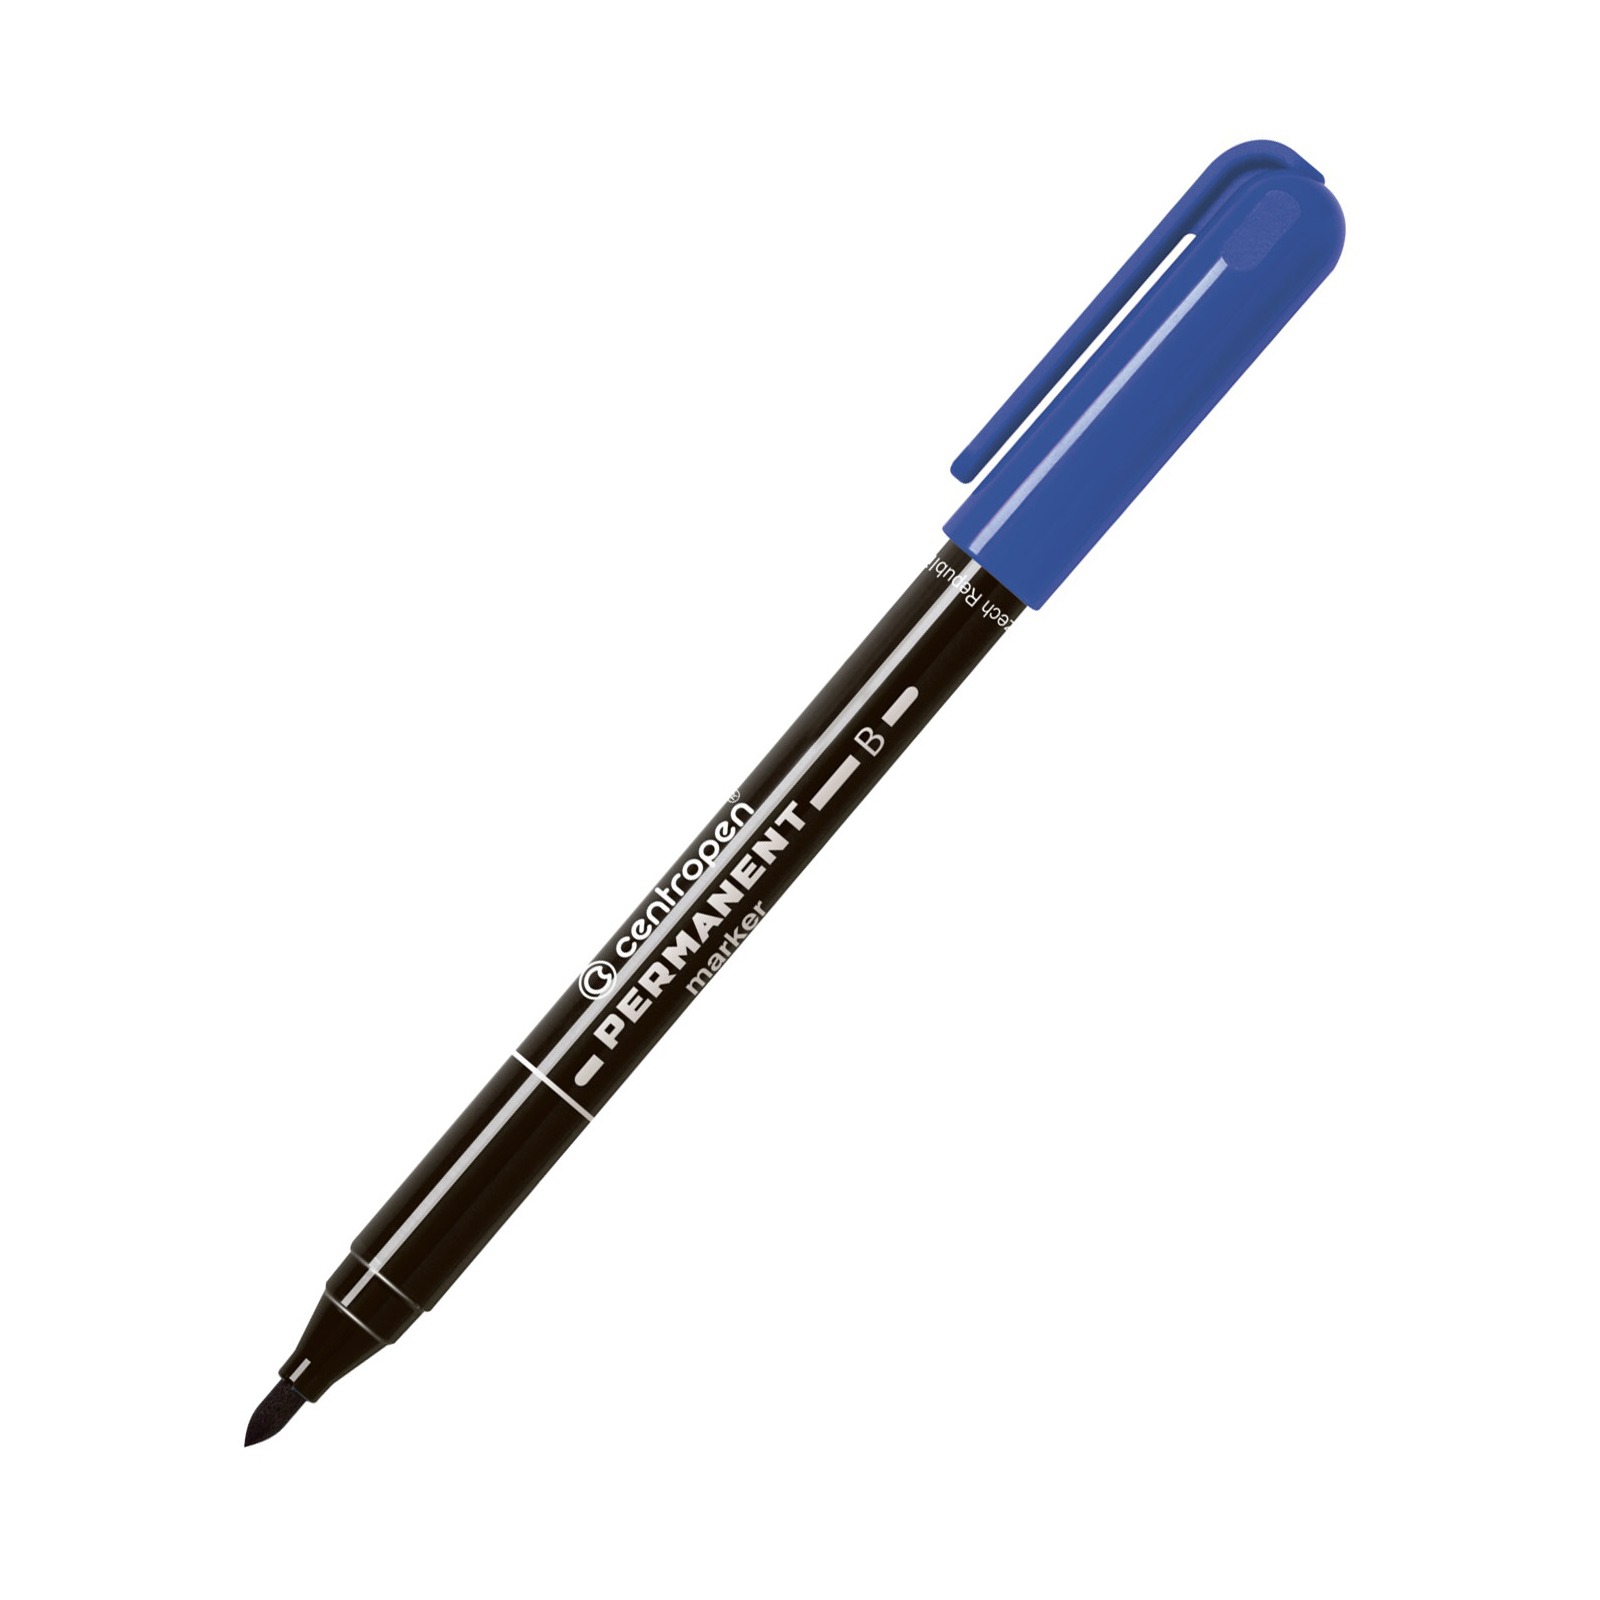 Маркер Centropen Permanent 2836 2 мм blue (2836/03)